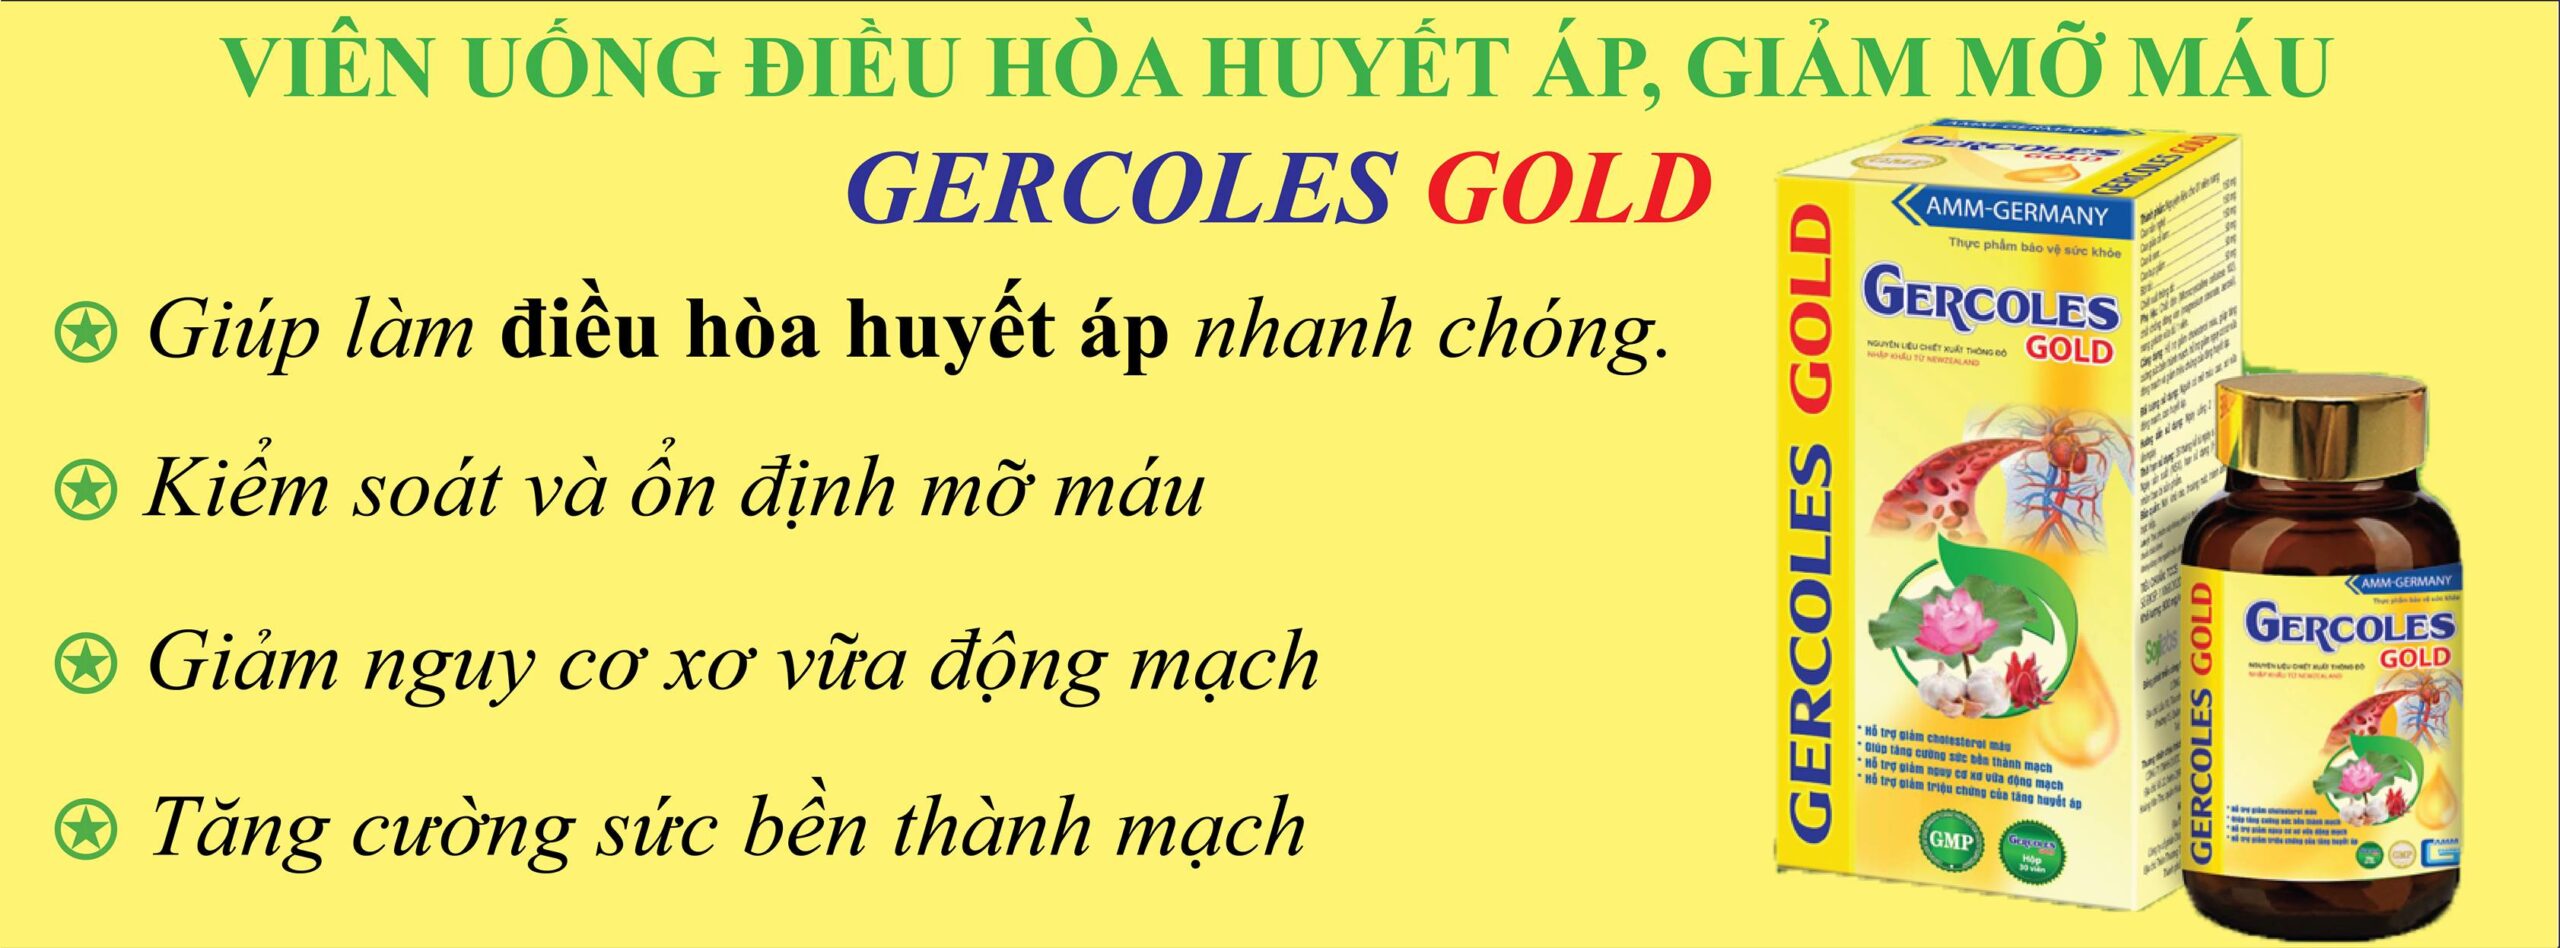 Gercoles-Gold-2